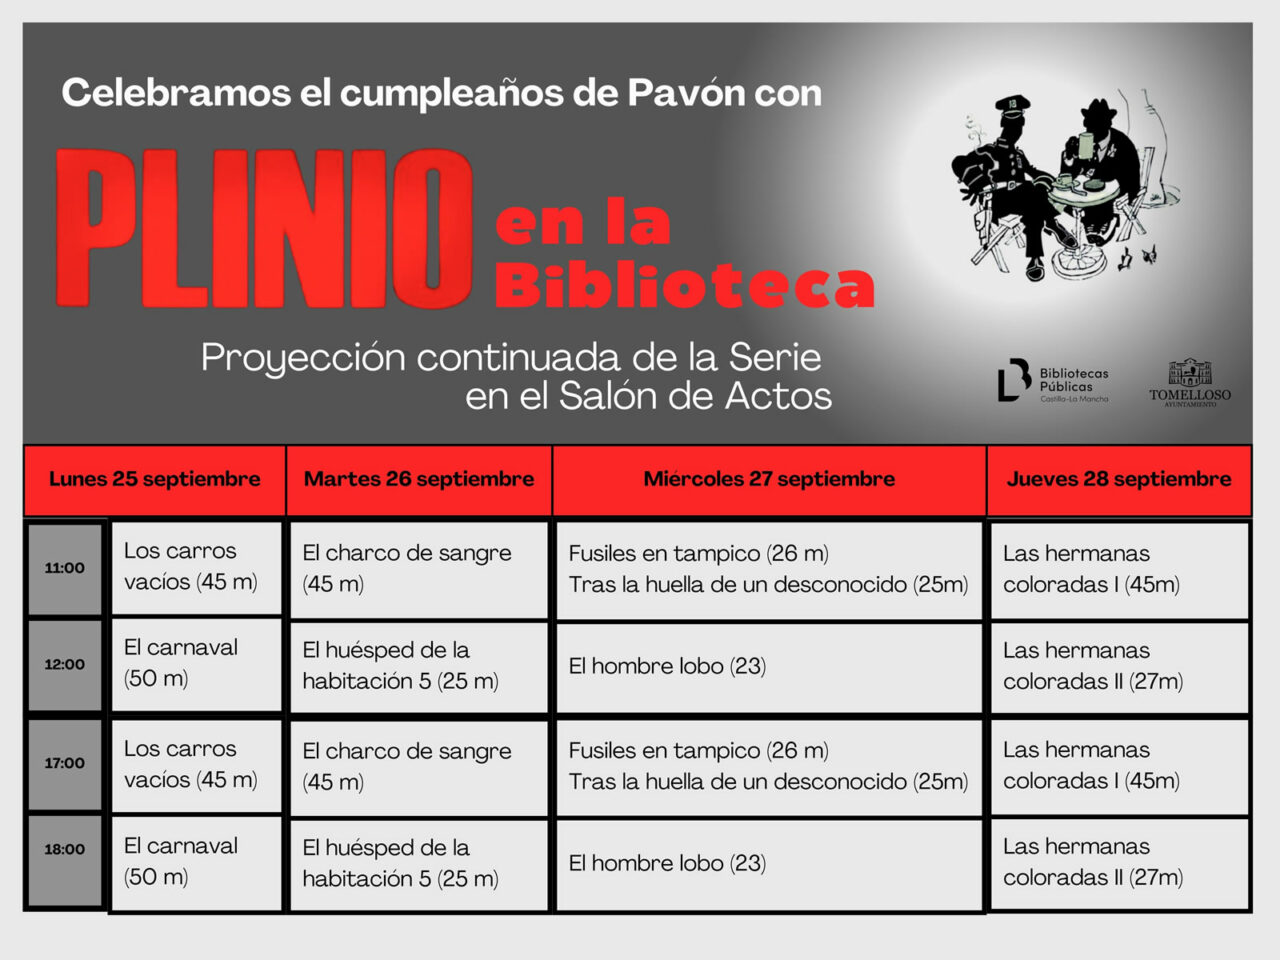 La Biblioteca celebra el cumpleaños de Francisco García Pavón con la proyección continuada de la serie Plinio